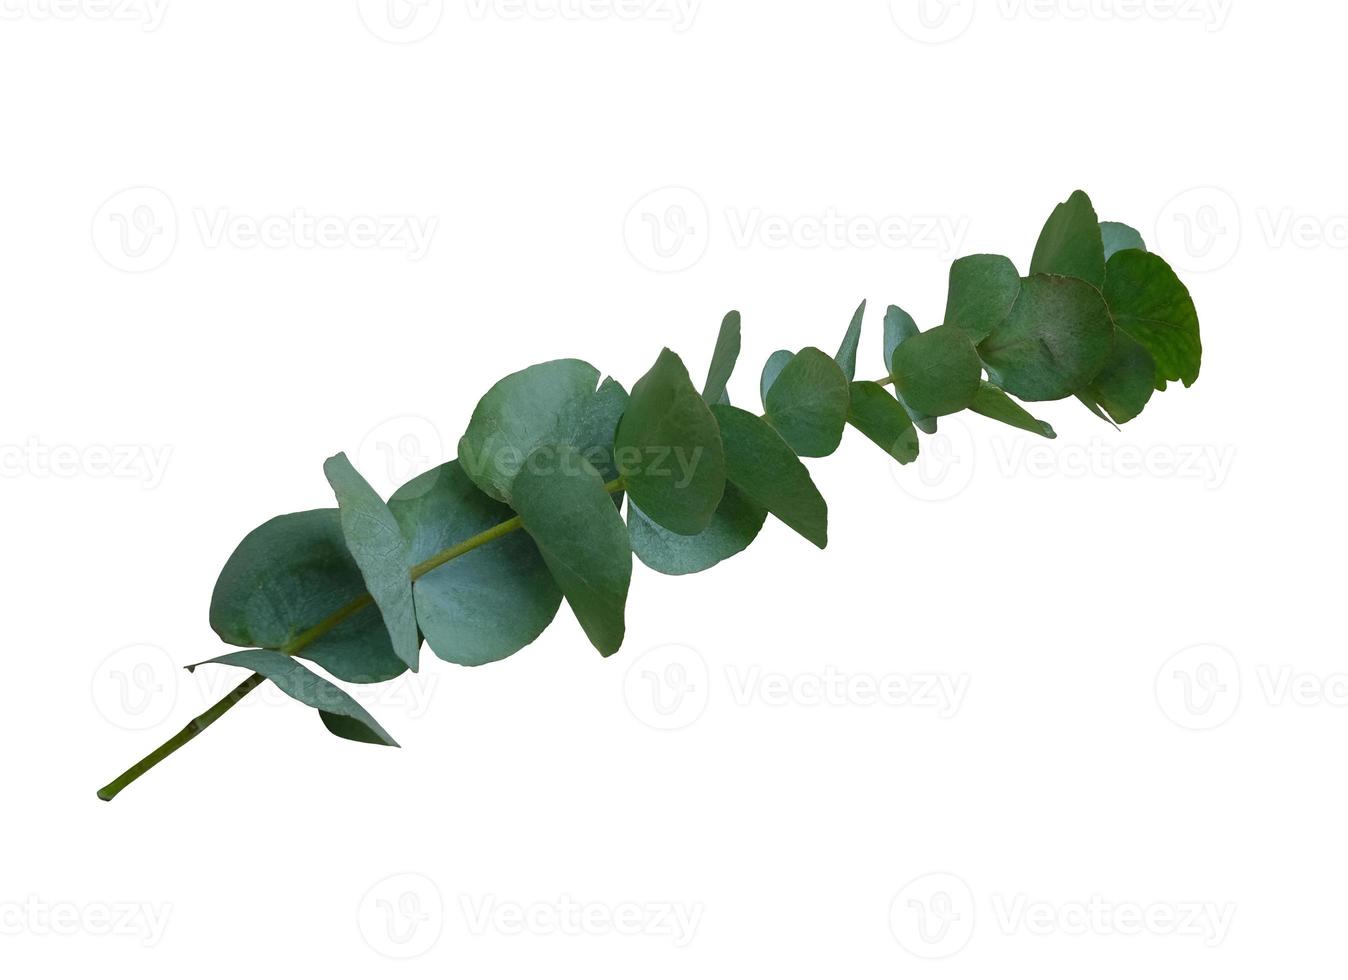 Eukalyptuszweig mit hellgrünen Blättern Nahaufnahme des ausgeschnittenen floralen Objekts auf dem weißen Hintergrund, Dekorelement für jedes Design foto